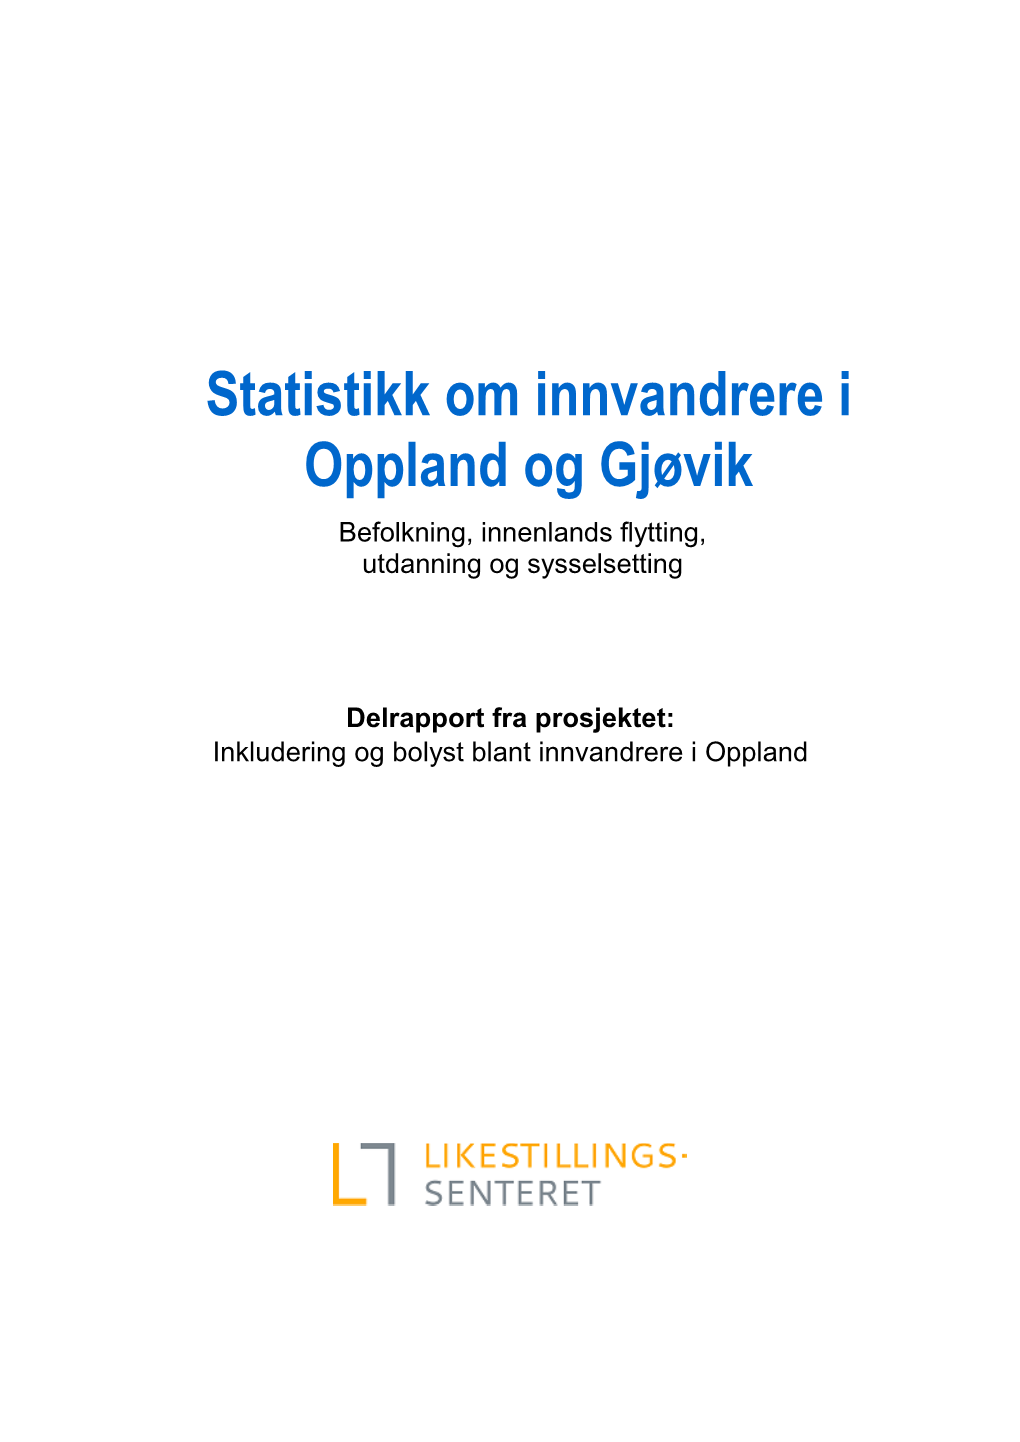 Statistikk Om Innvandrere I Oppland Og Gjøvik